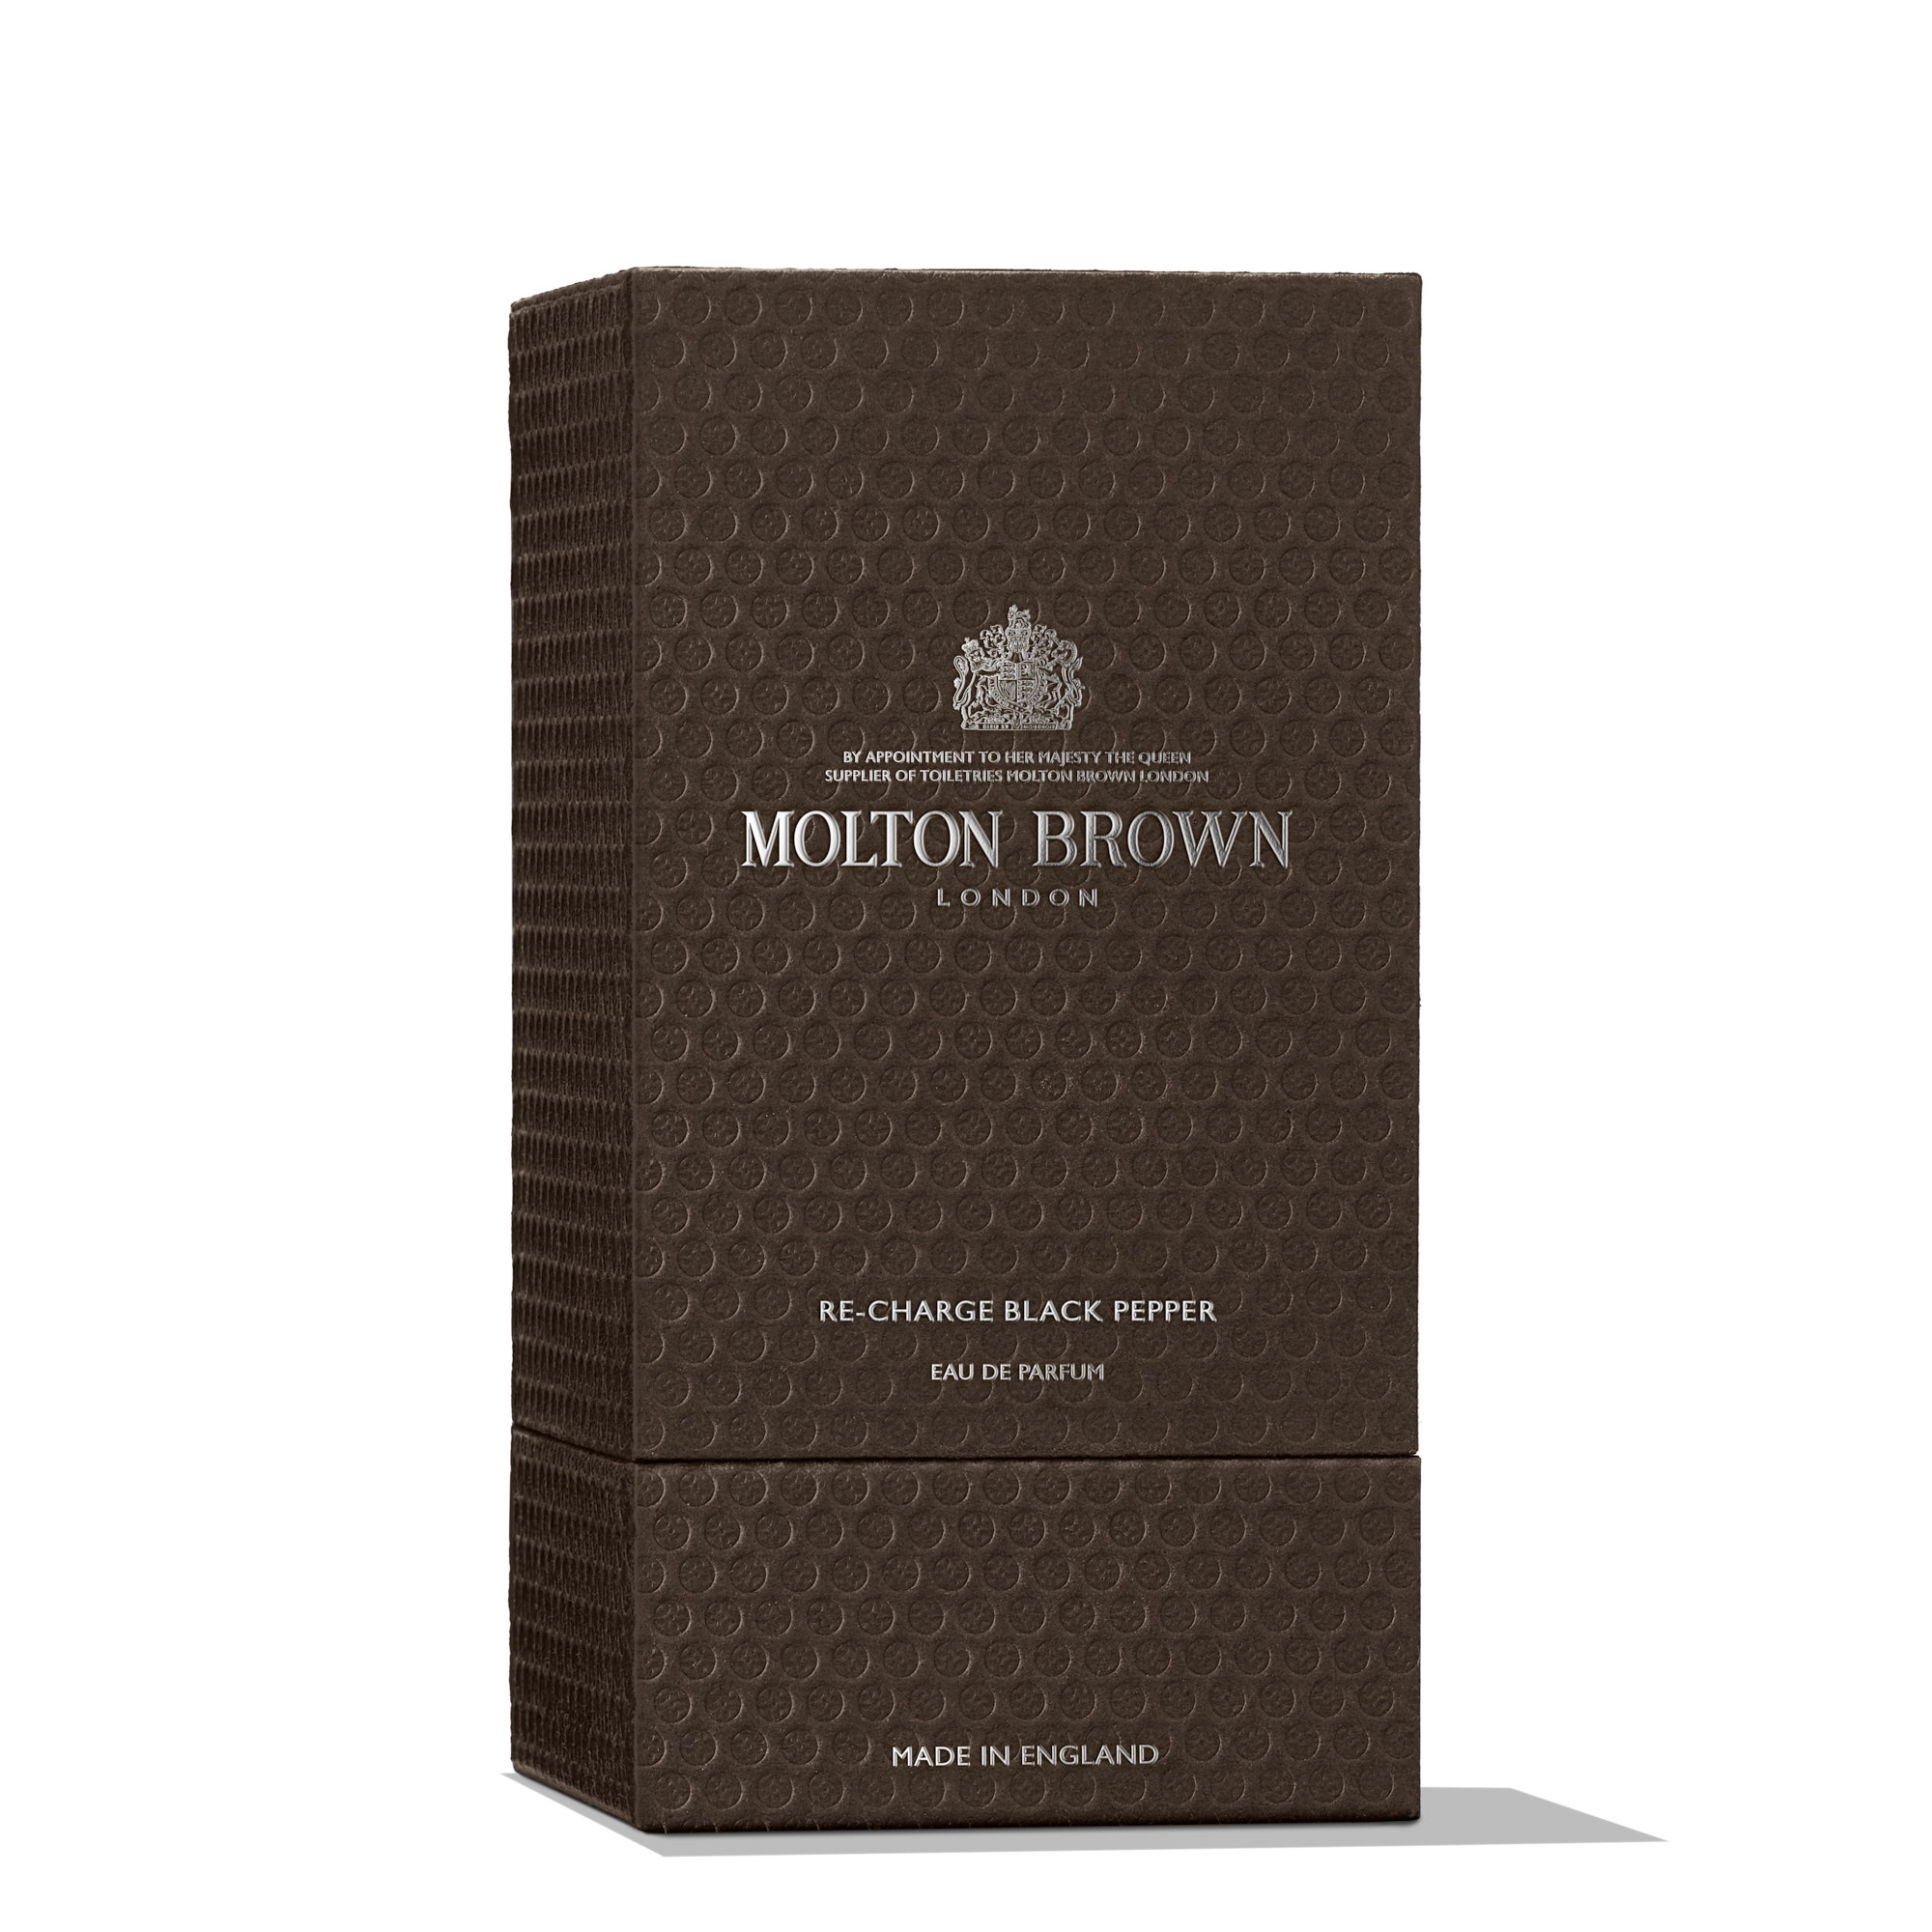 Molton Brown RE-CHARGE BLACK PEPPER EAU DE PARFUM 100ML